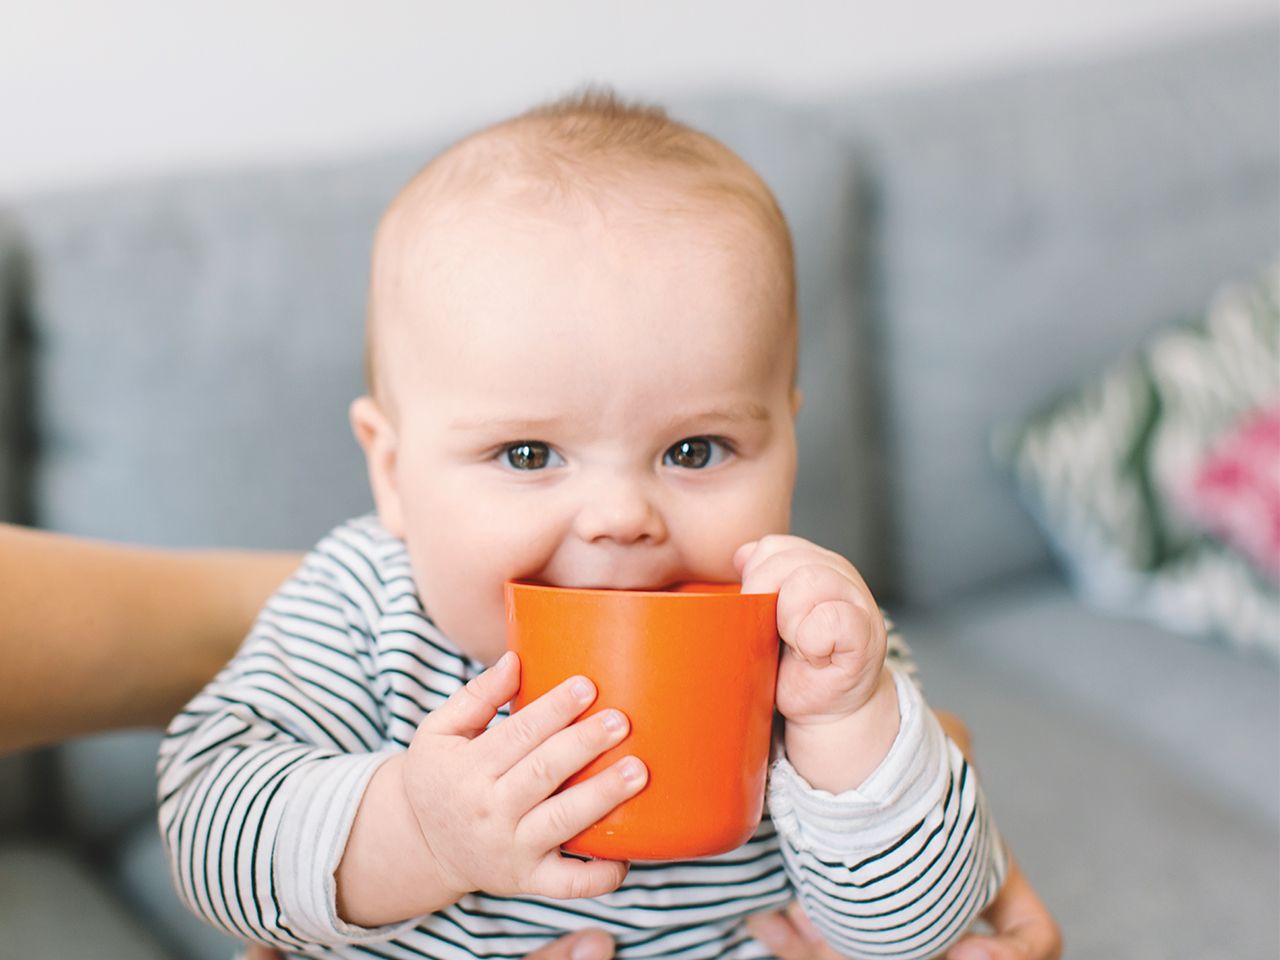 סקירת כוסות הלגיאות הטובות ביותר לתינוקות בשנת 2020 - יתרונות, חסרונות ומחיר